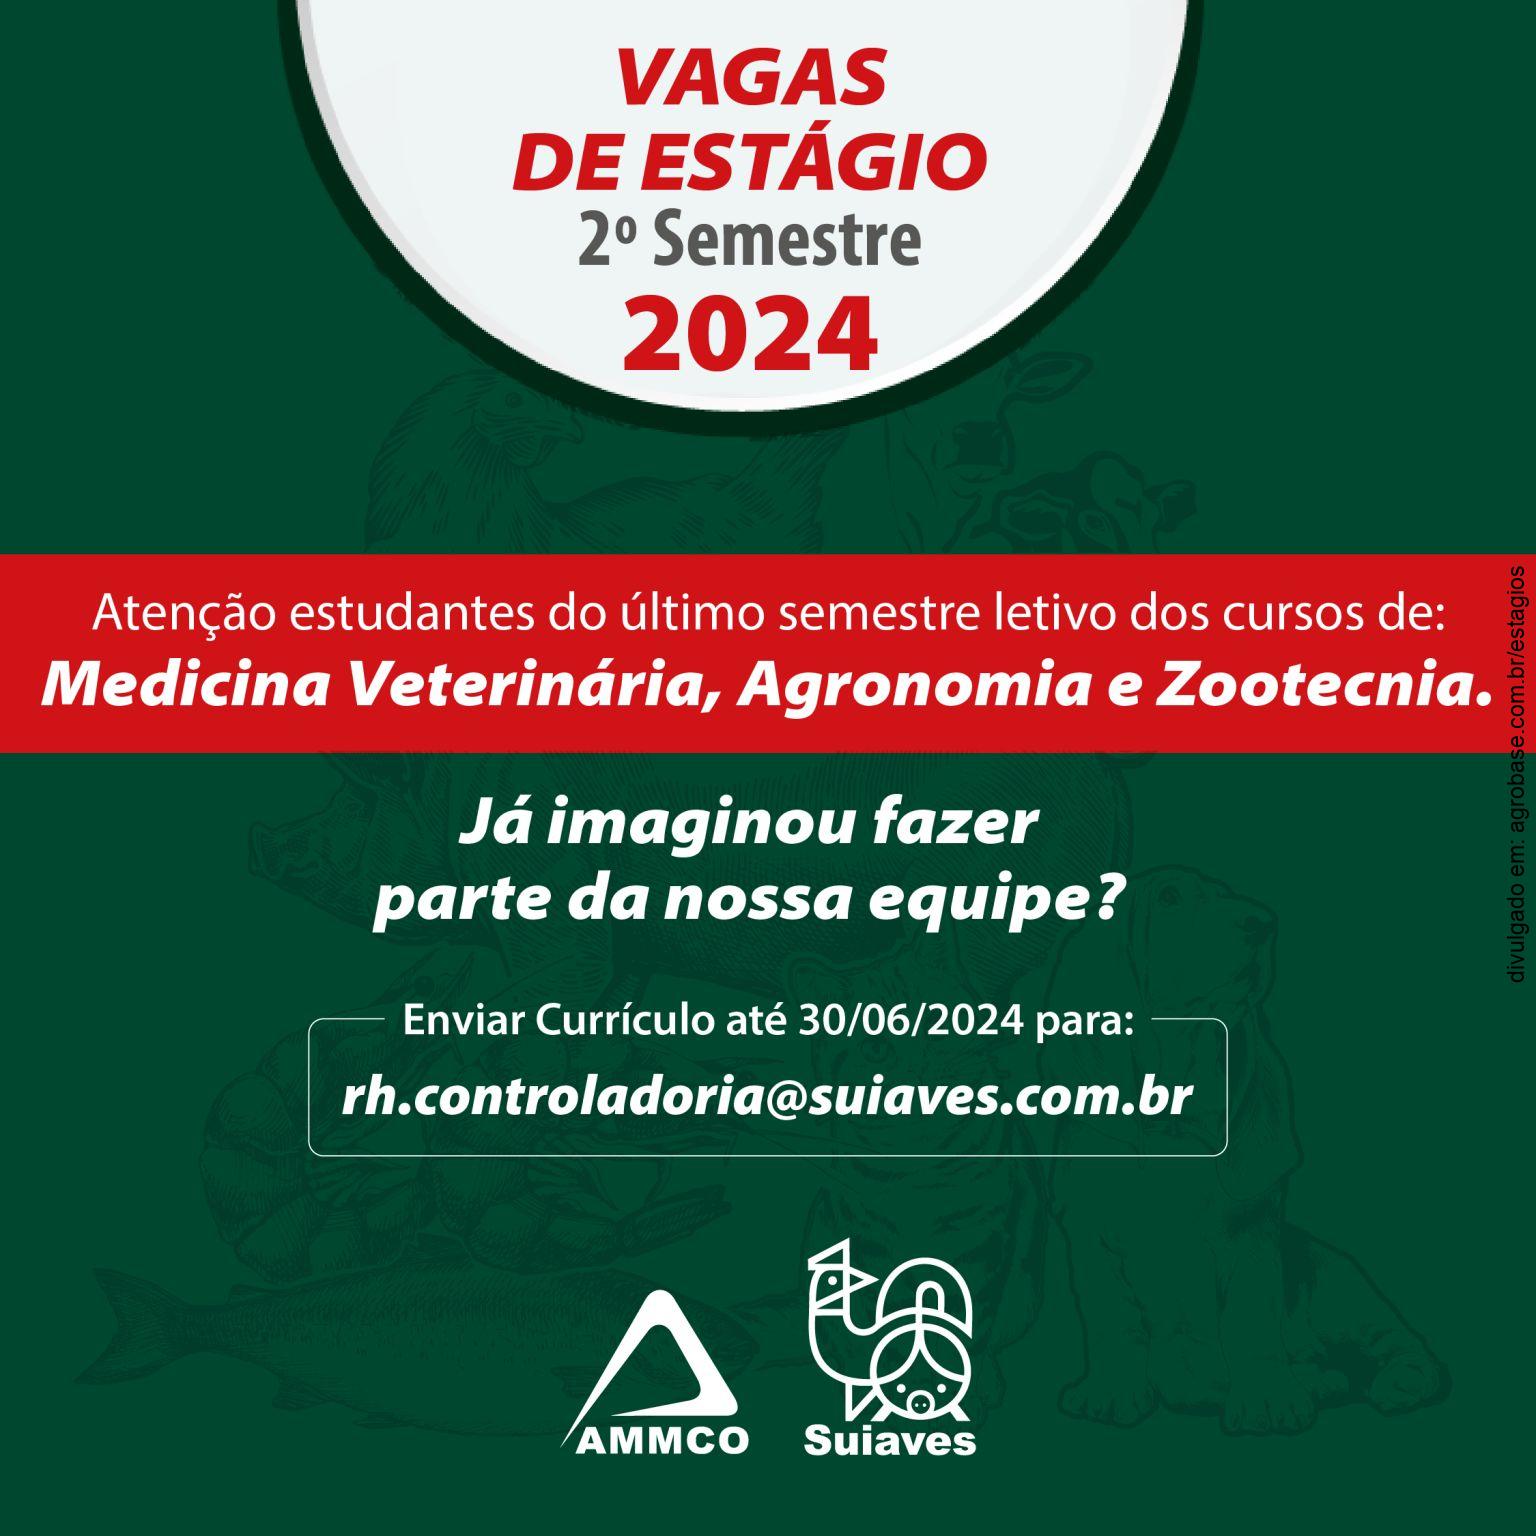 Estágio para estudantes de med. veterinária, agronomia e zootecnia – Piracicaba/SP